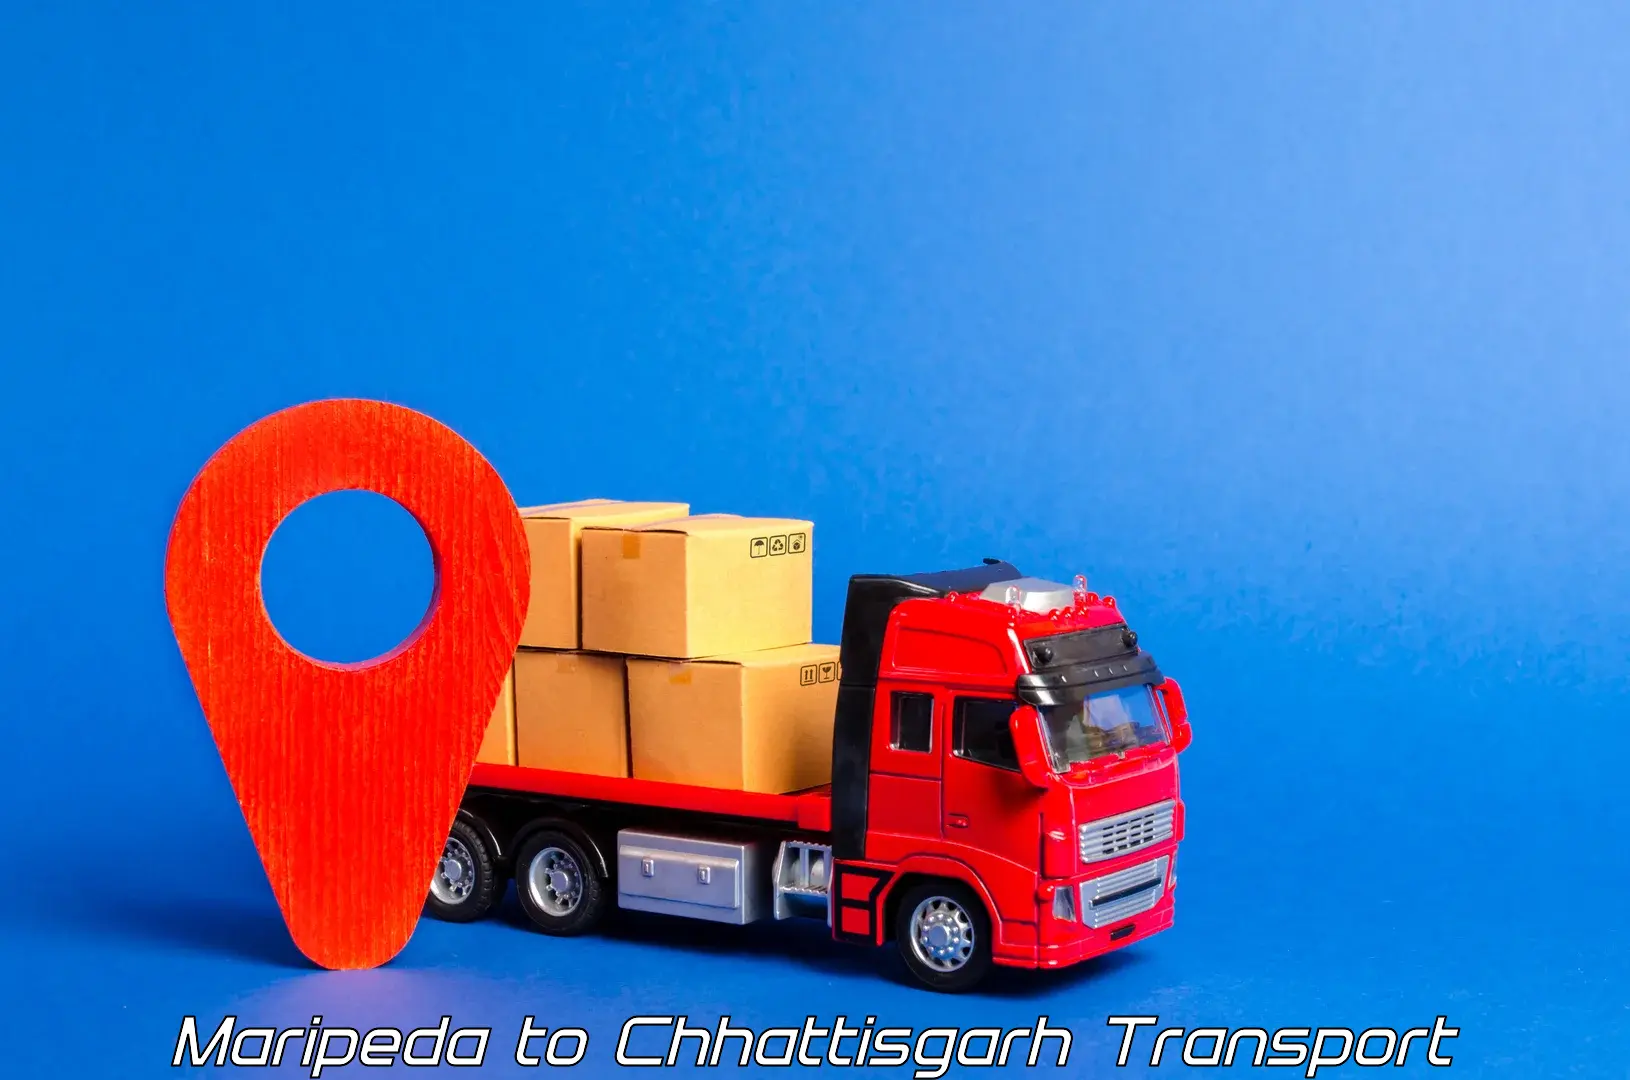 Furniture transport service Maripeda to Mandhar